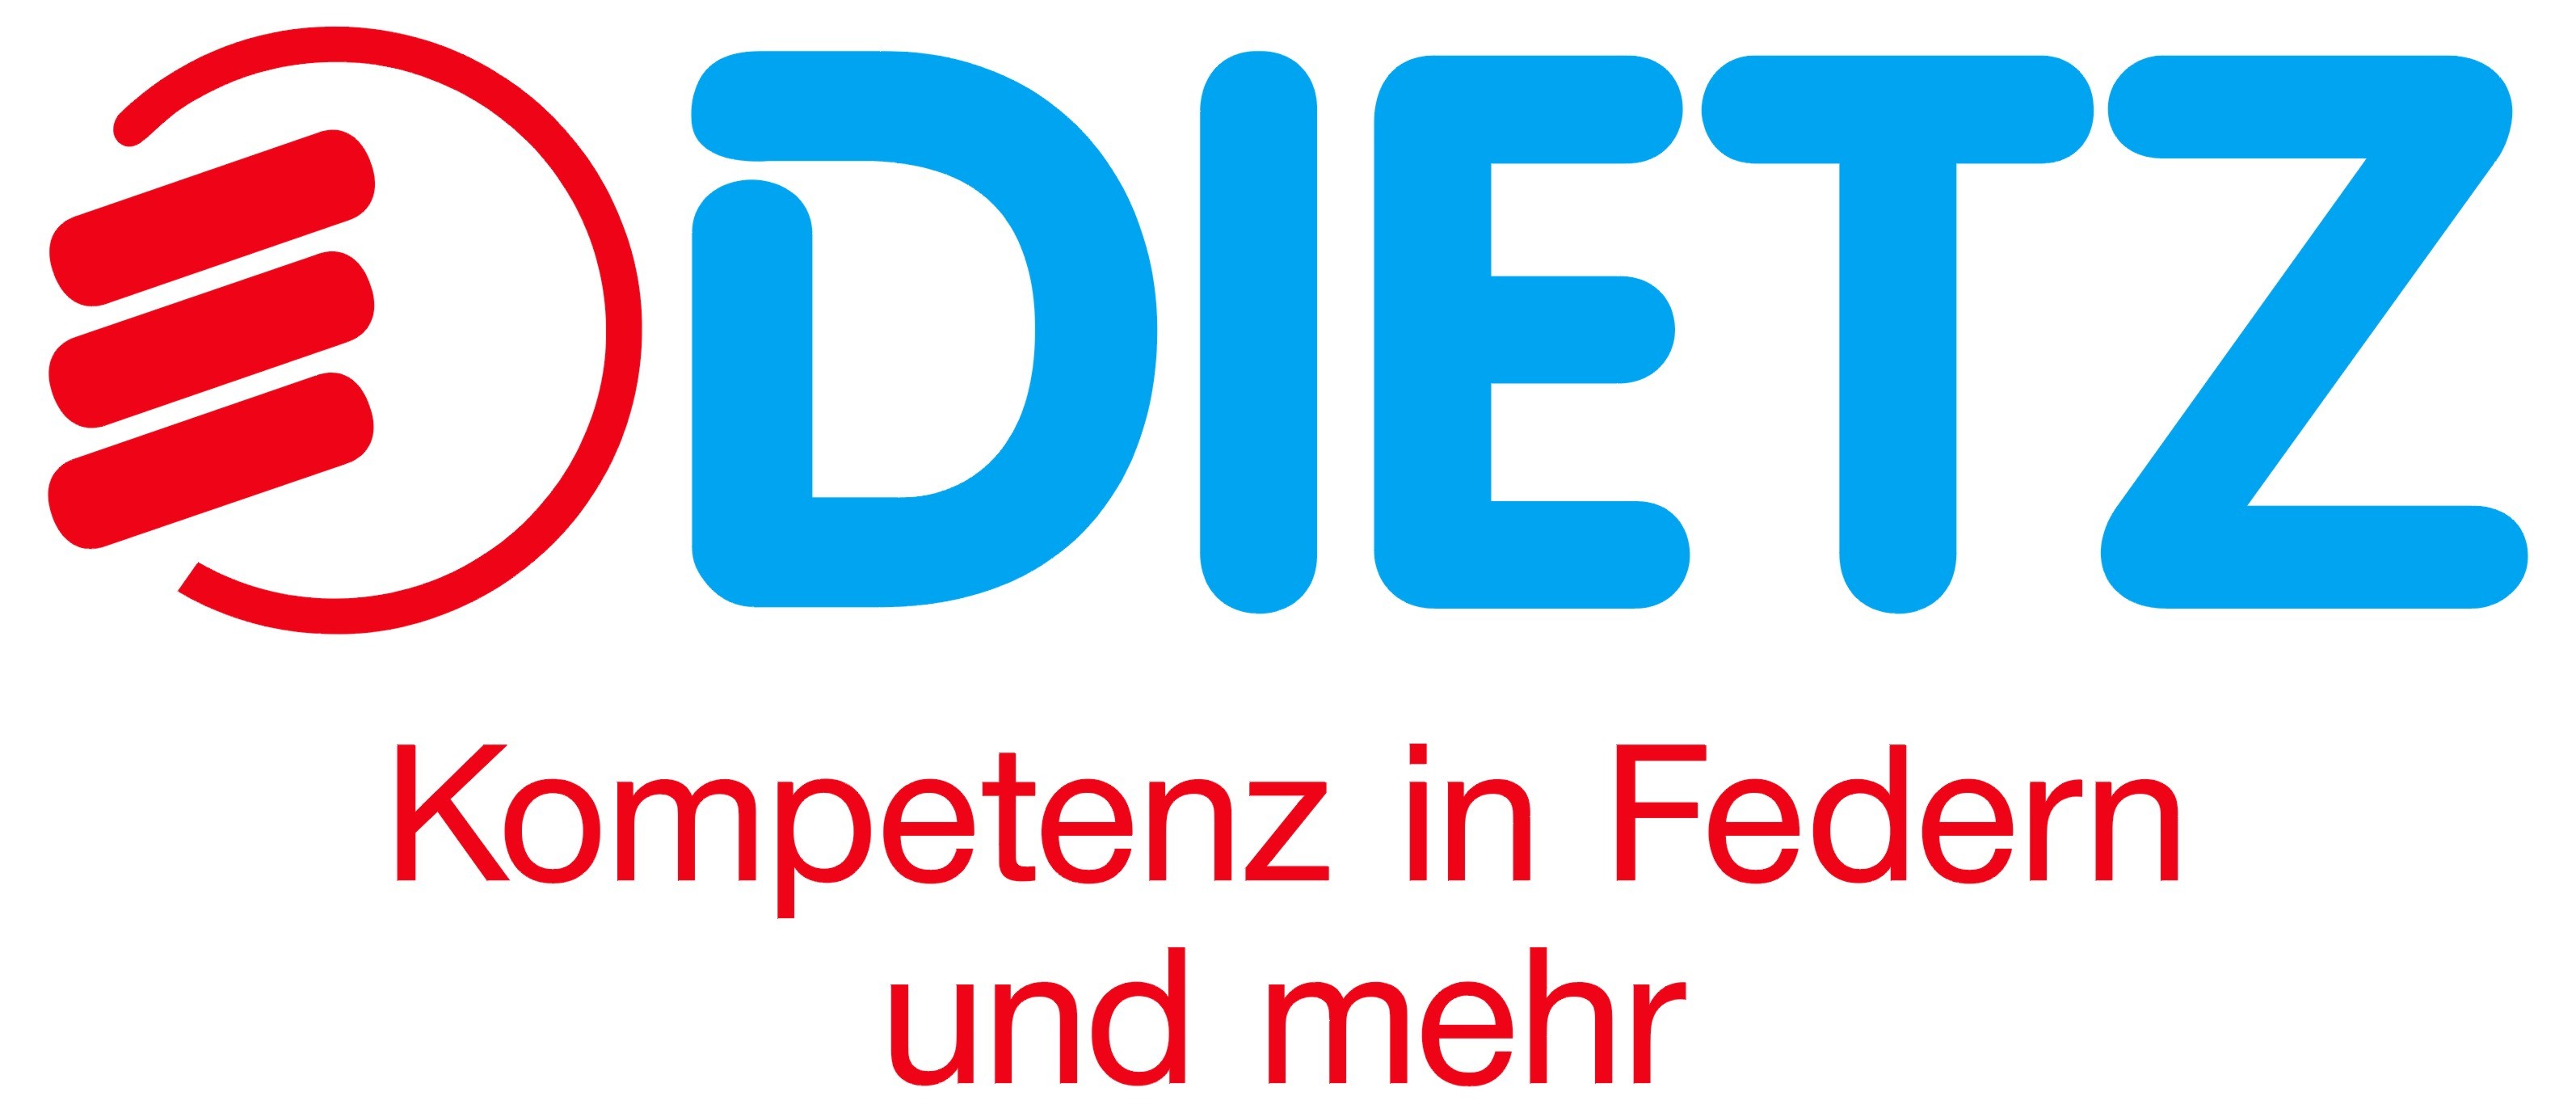 Federnfabrik Dietz GmbH